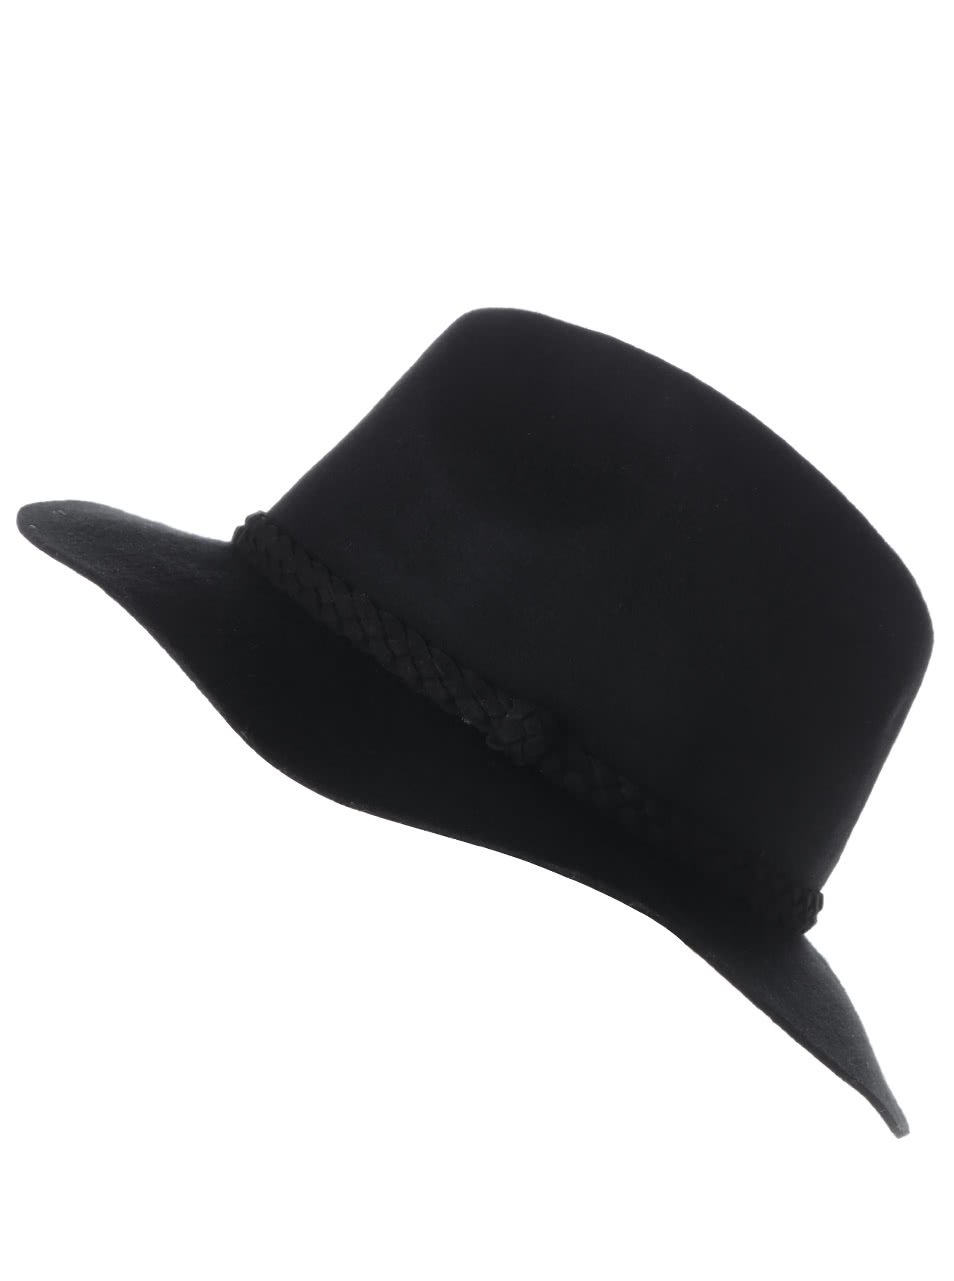 Černý klobouk s páskem Vero Moda Dana